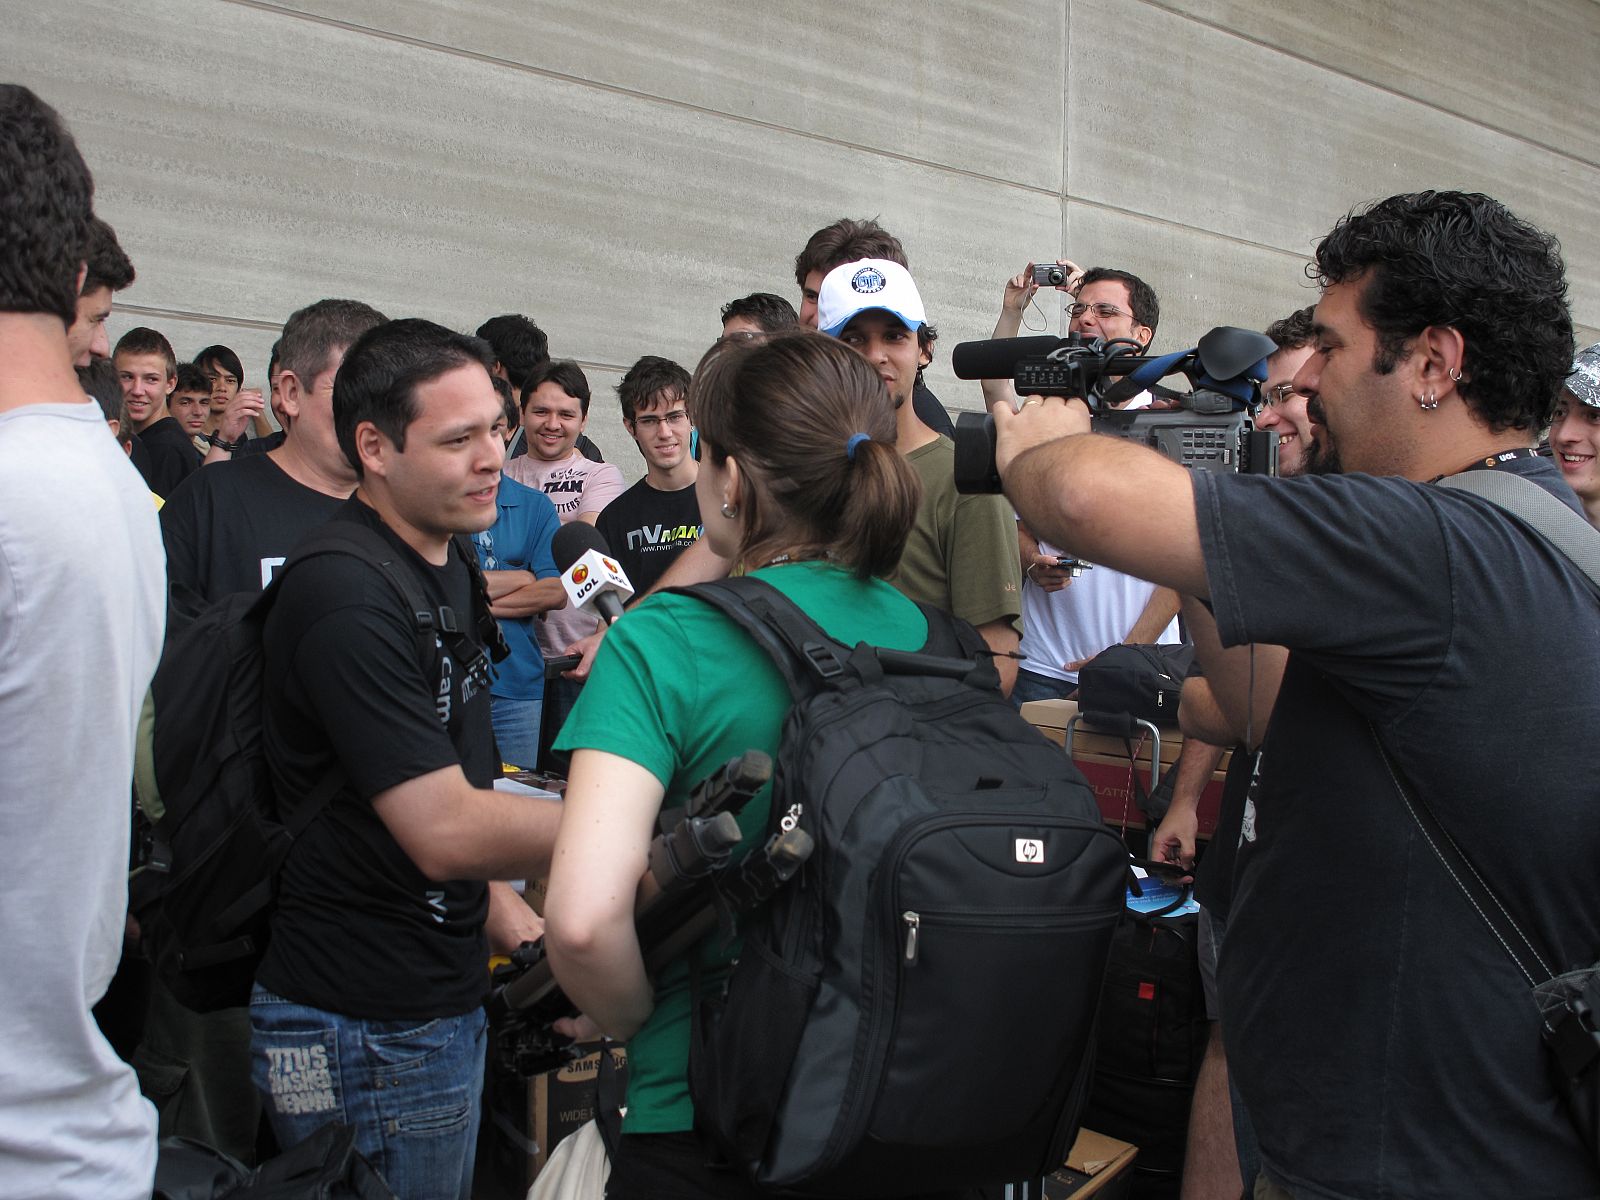 Una periodista brasileña entrevista a un campusero  a la entrada del recinto.